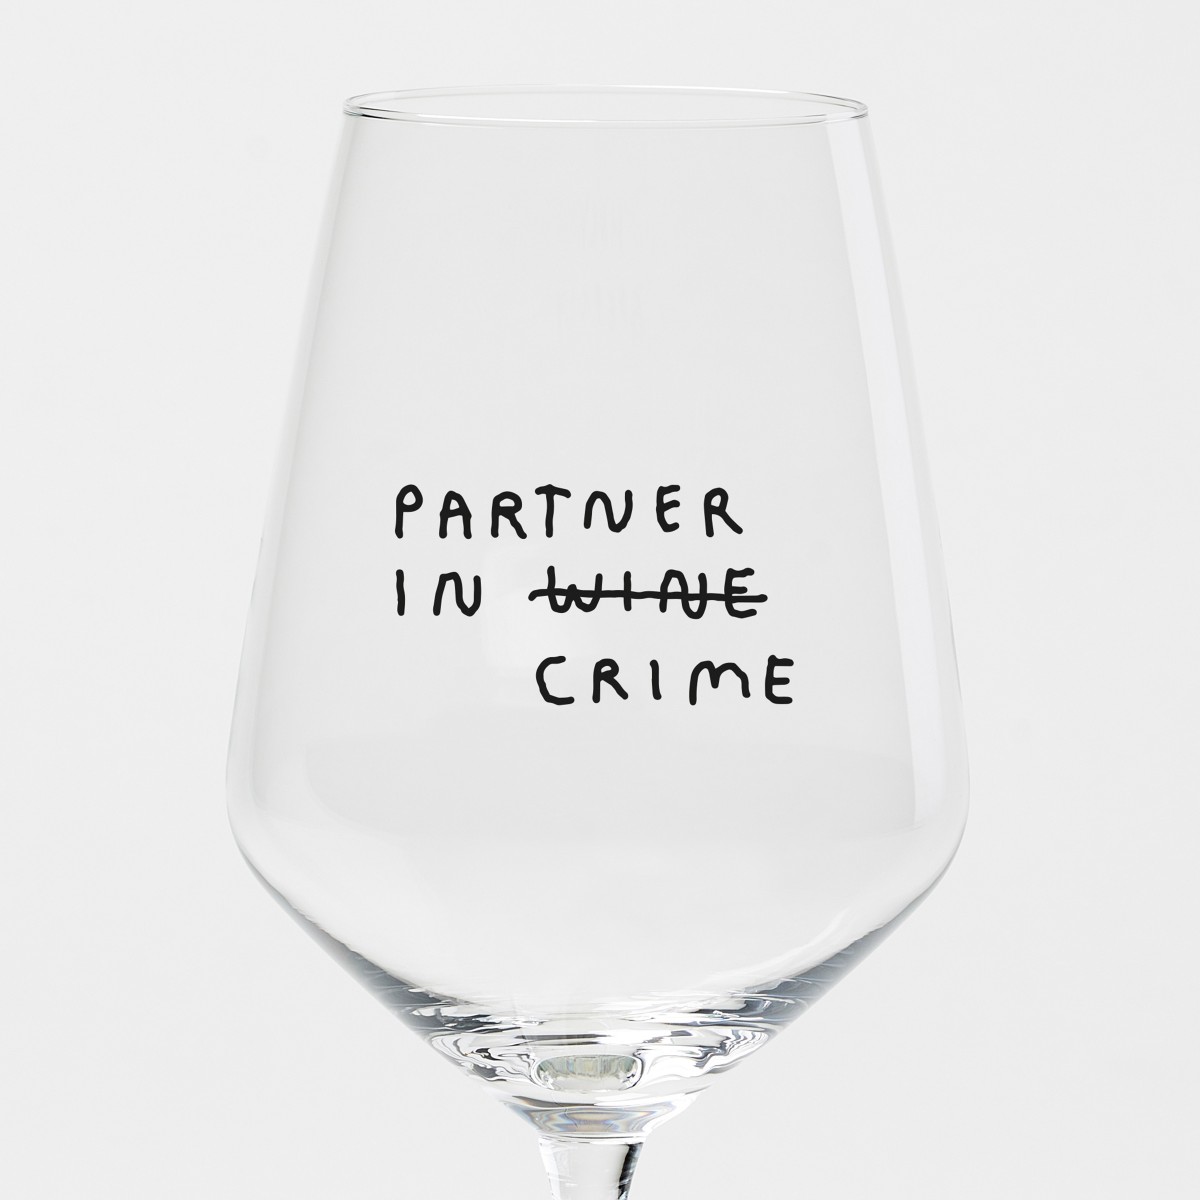 "Partner In Wine" Weinglas by Johanna Schwarzer × selekkt